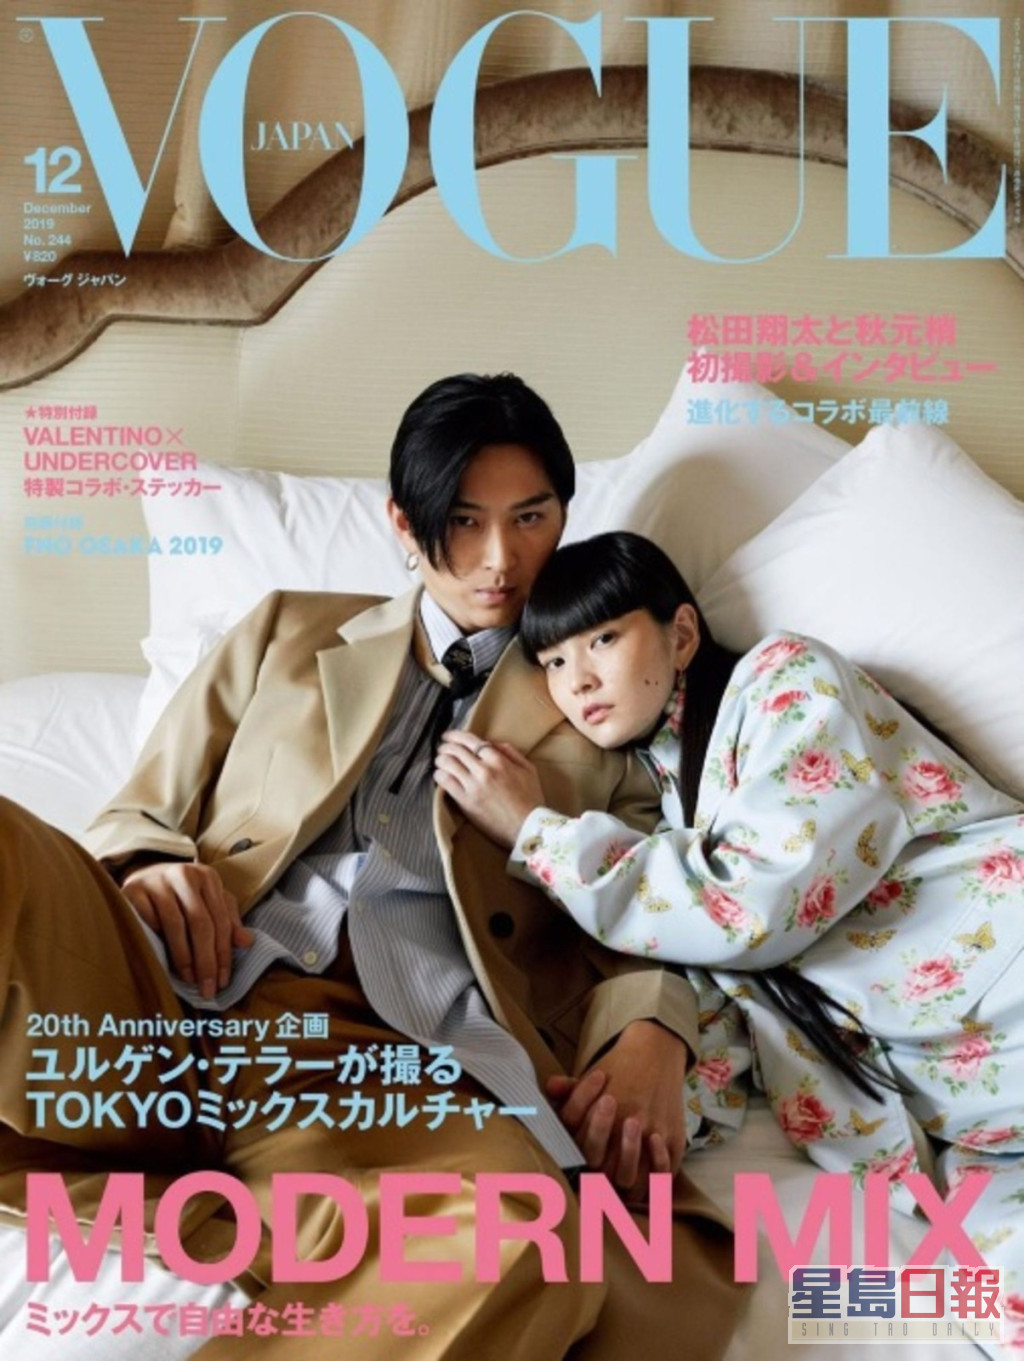 松田翔太和秋元梢曾一同登上時尚雜誌封面。